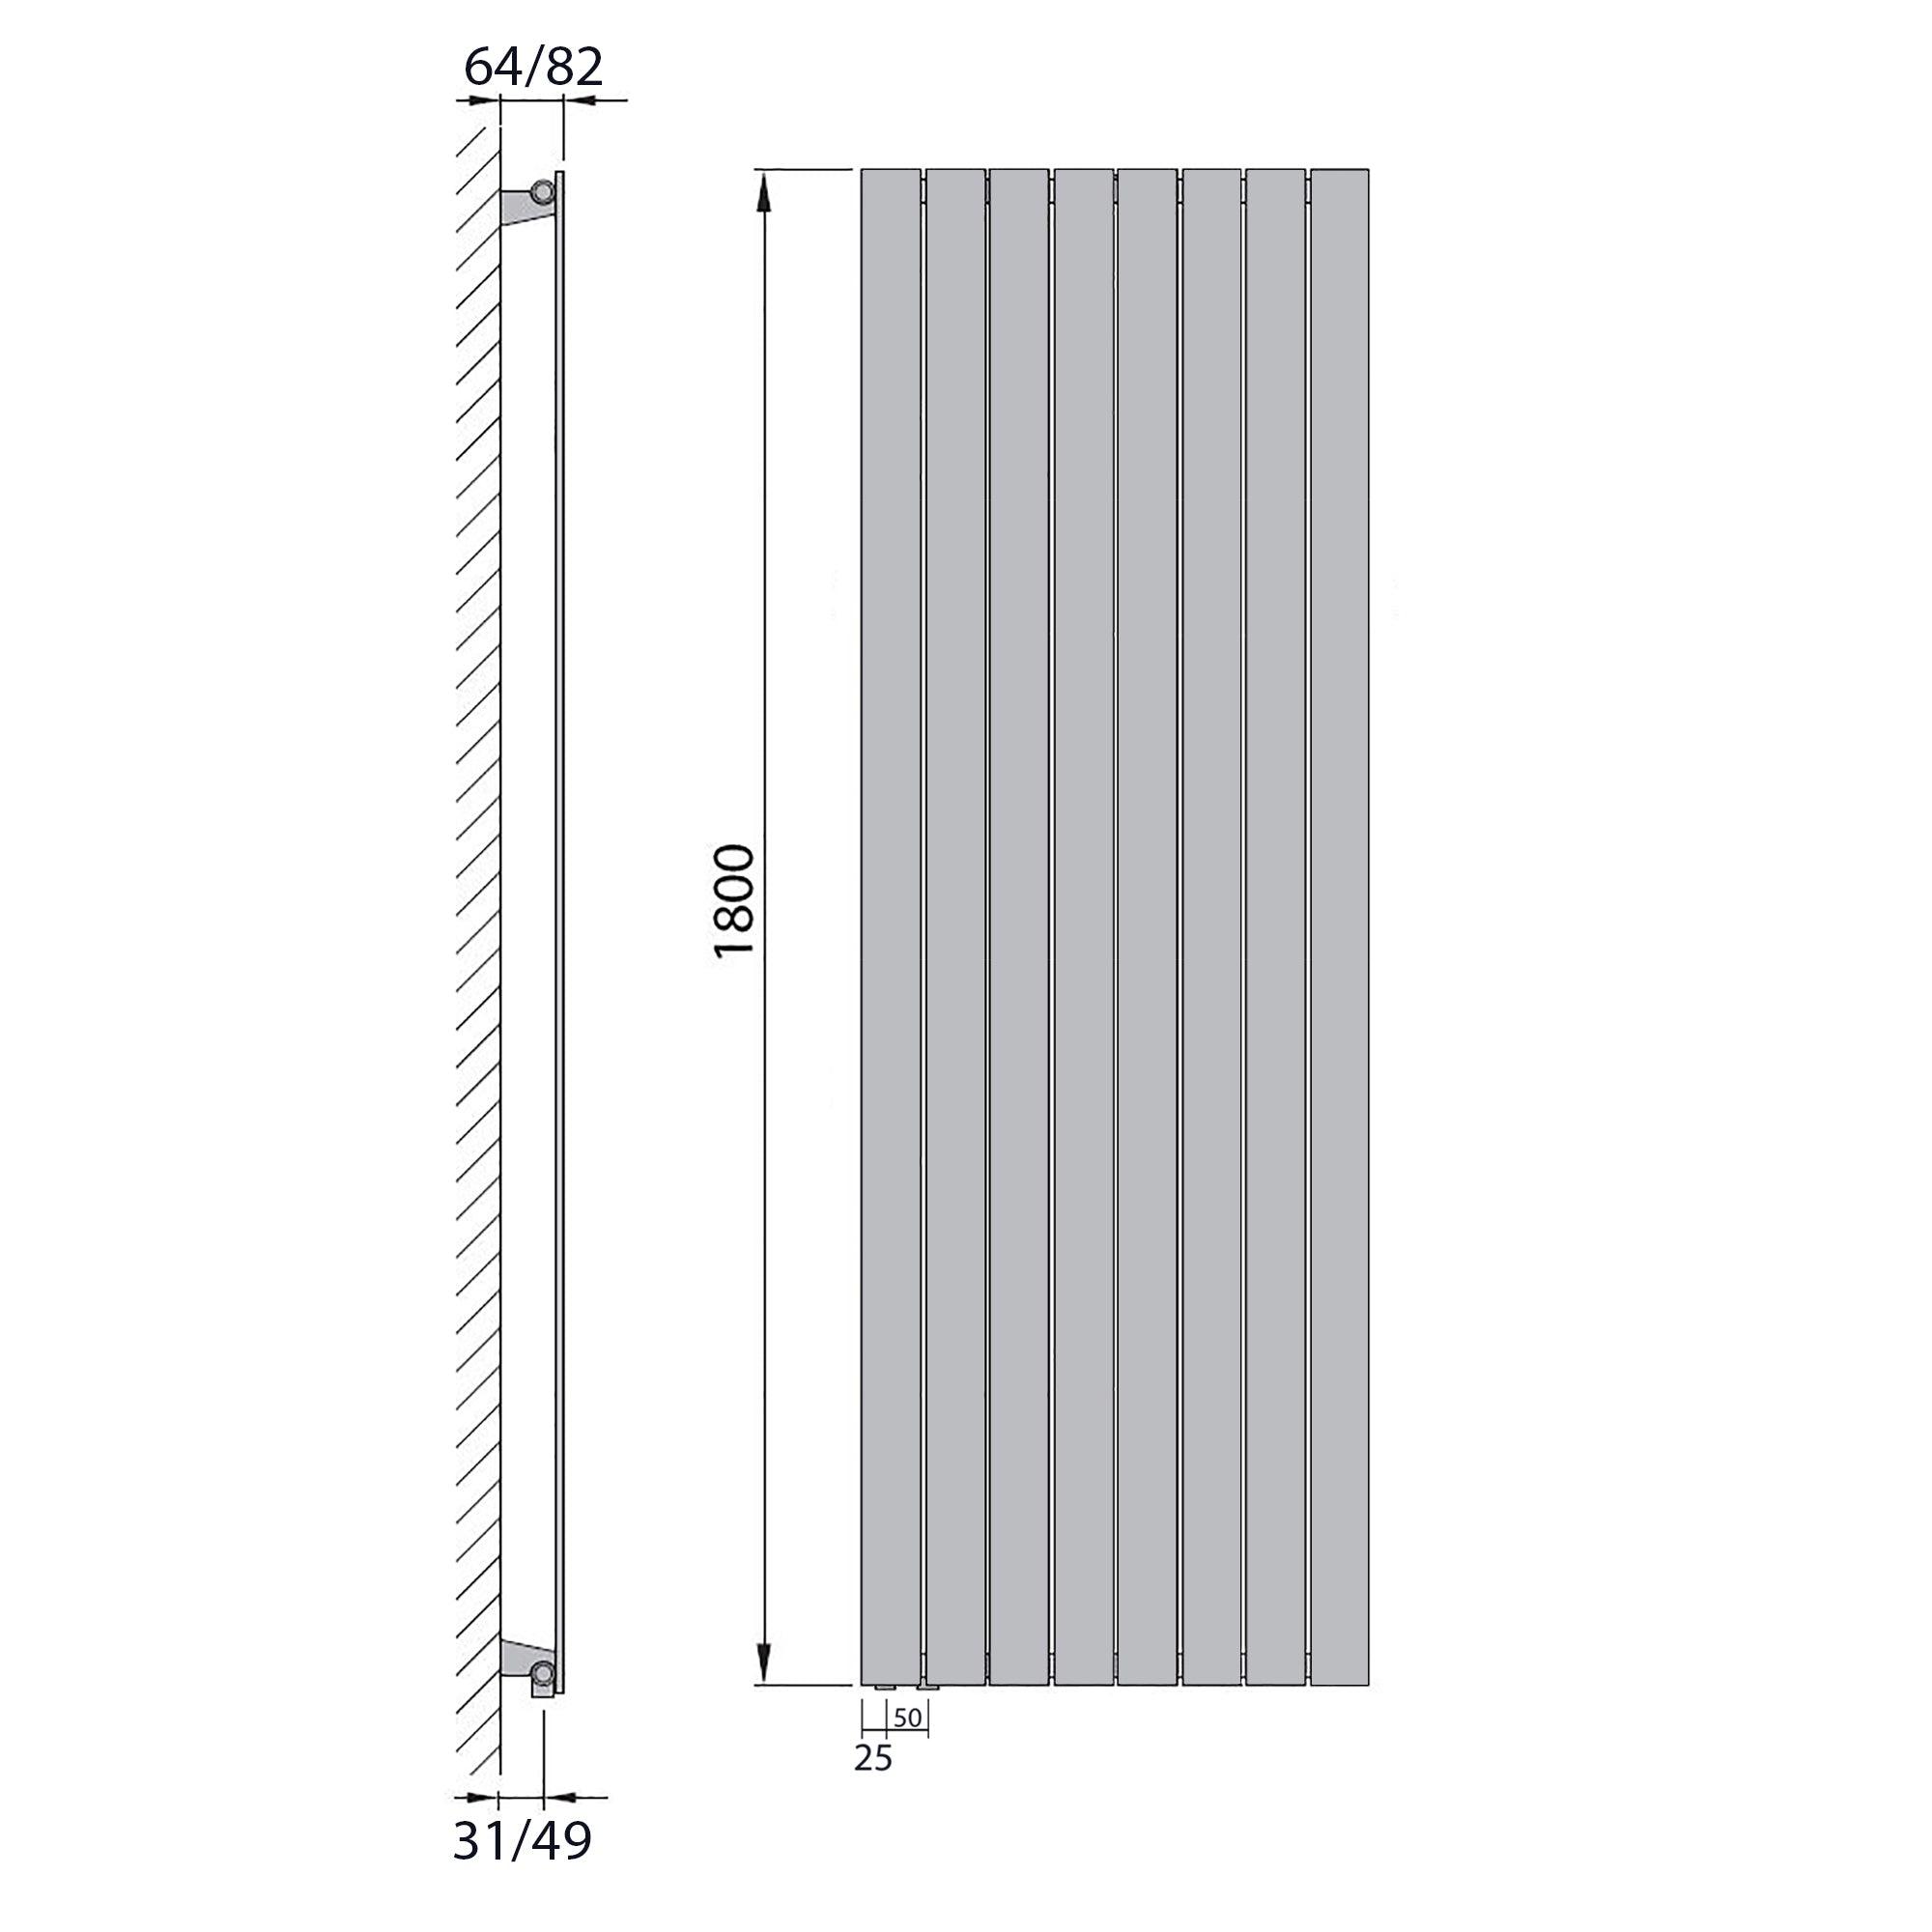 Design Paneelheizkörper Bad Flachheizkörper 1800 x 602 mit Anschluss links | mit versetztem Mittelanschluss flach technische Zeichnung - heizkoerper.shop